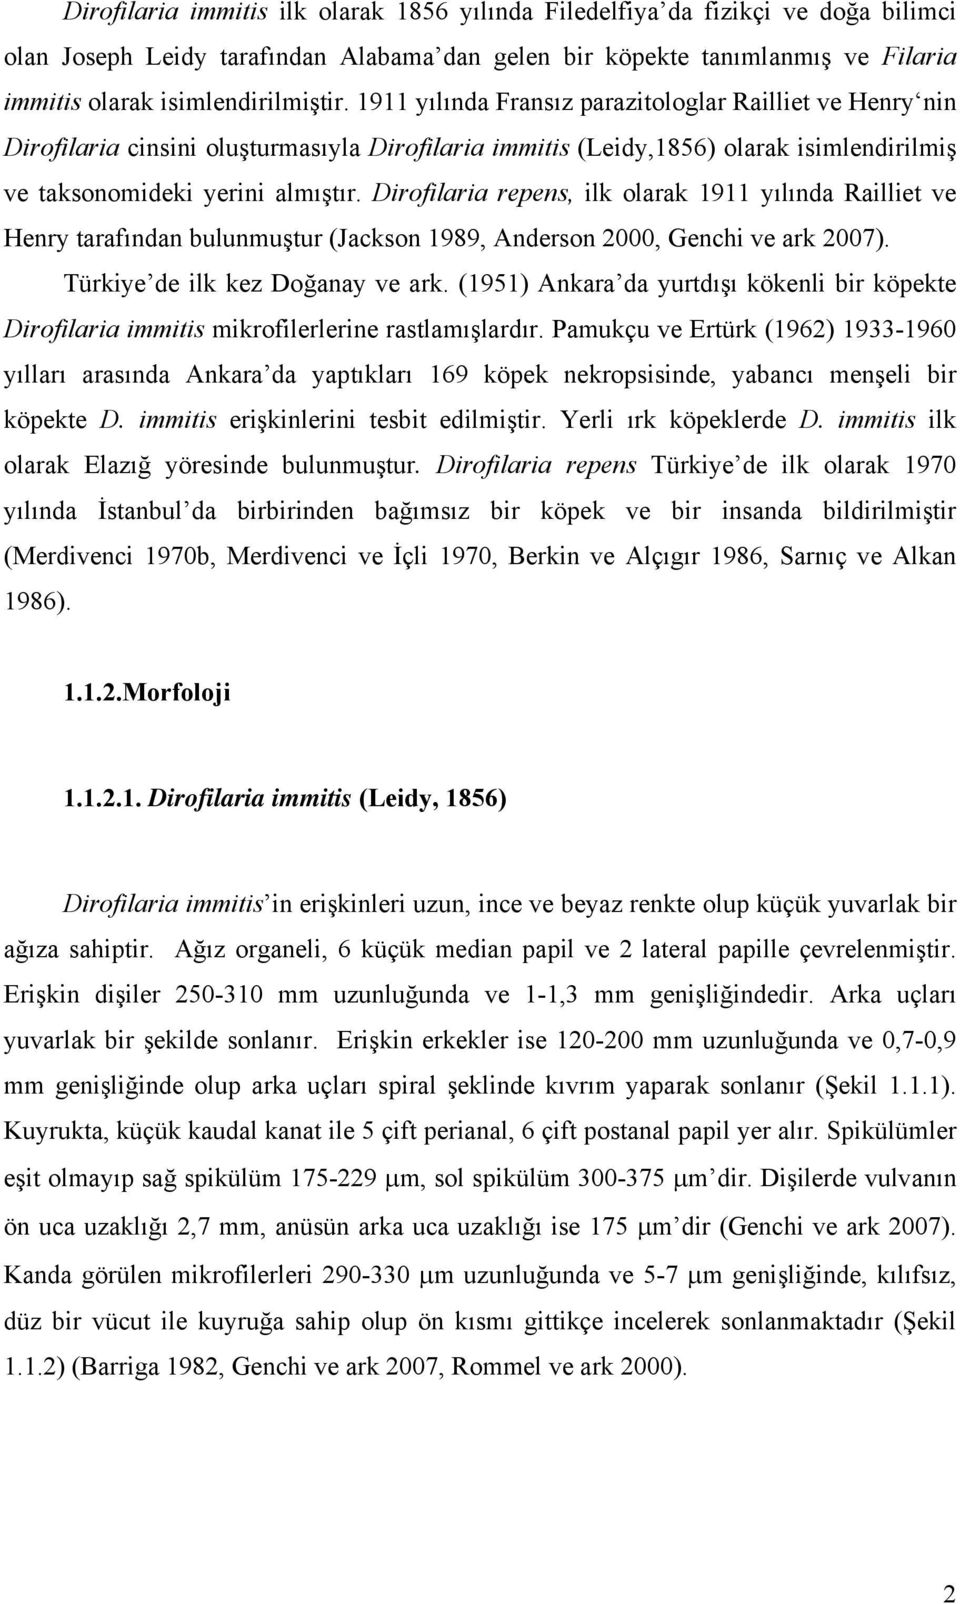 Dirofilaria repens, ilk olarak 1911 yılında Railliet ve Henry tarafından bulunmuştur (Jackson 1989, Anderson 2000, Genchi ve ark 2007). Türkiye de ilk kez Doğanay ve ark.